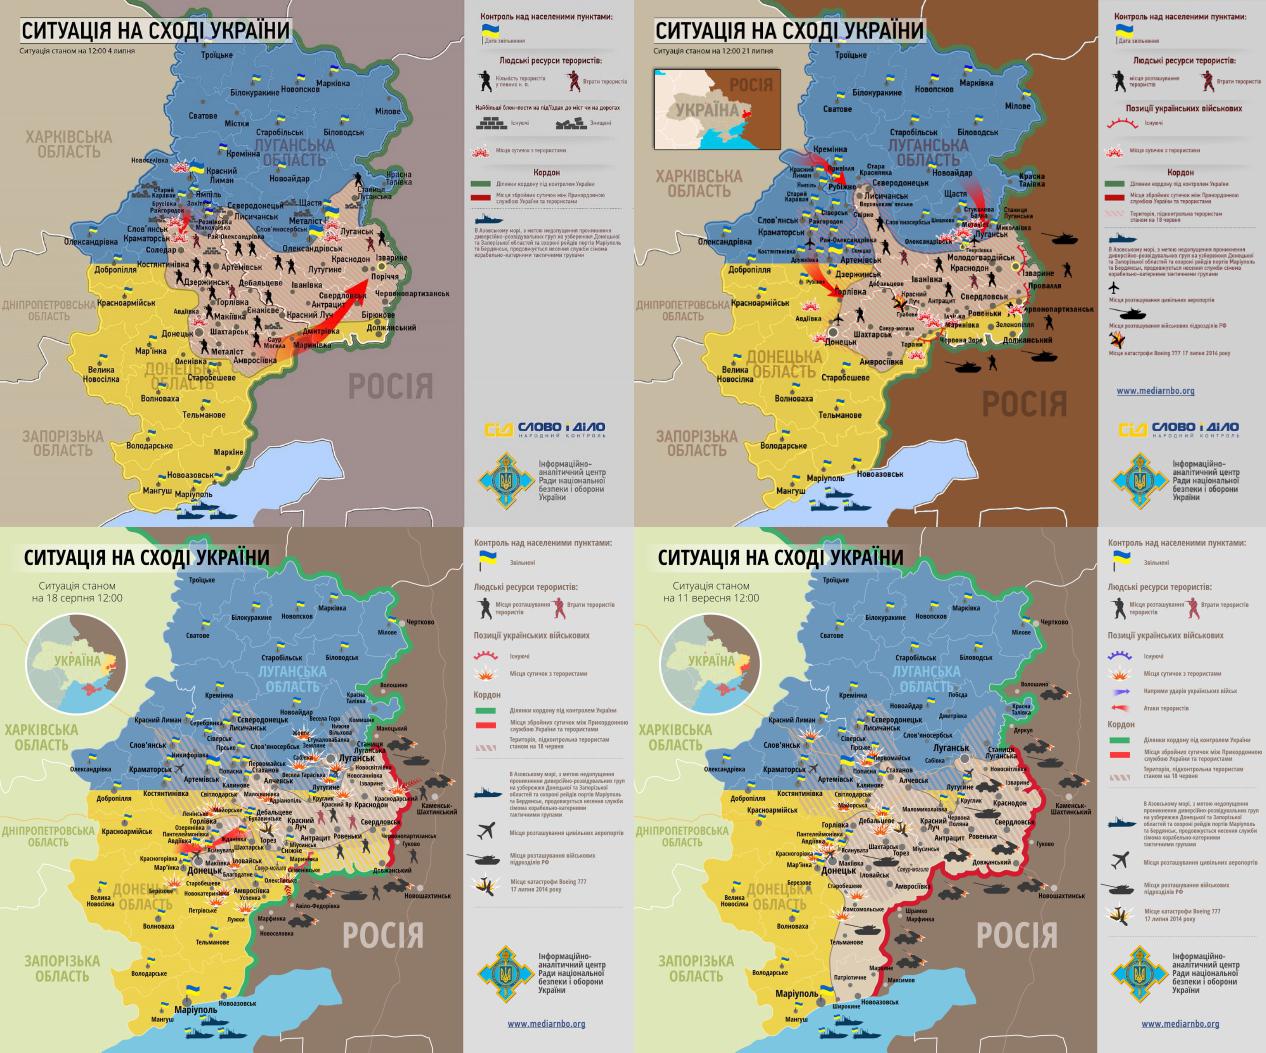 Ukrainan sodassa käytiin kovia taisteluita kesällä 2014. Kansallisen turvallisuus- ja puolustusneuvoston kartat joukkojen asemista 4.7.-11.9.2014